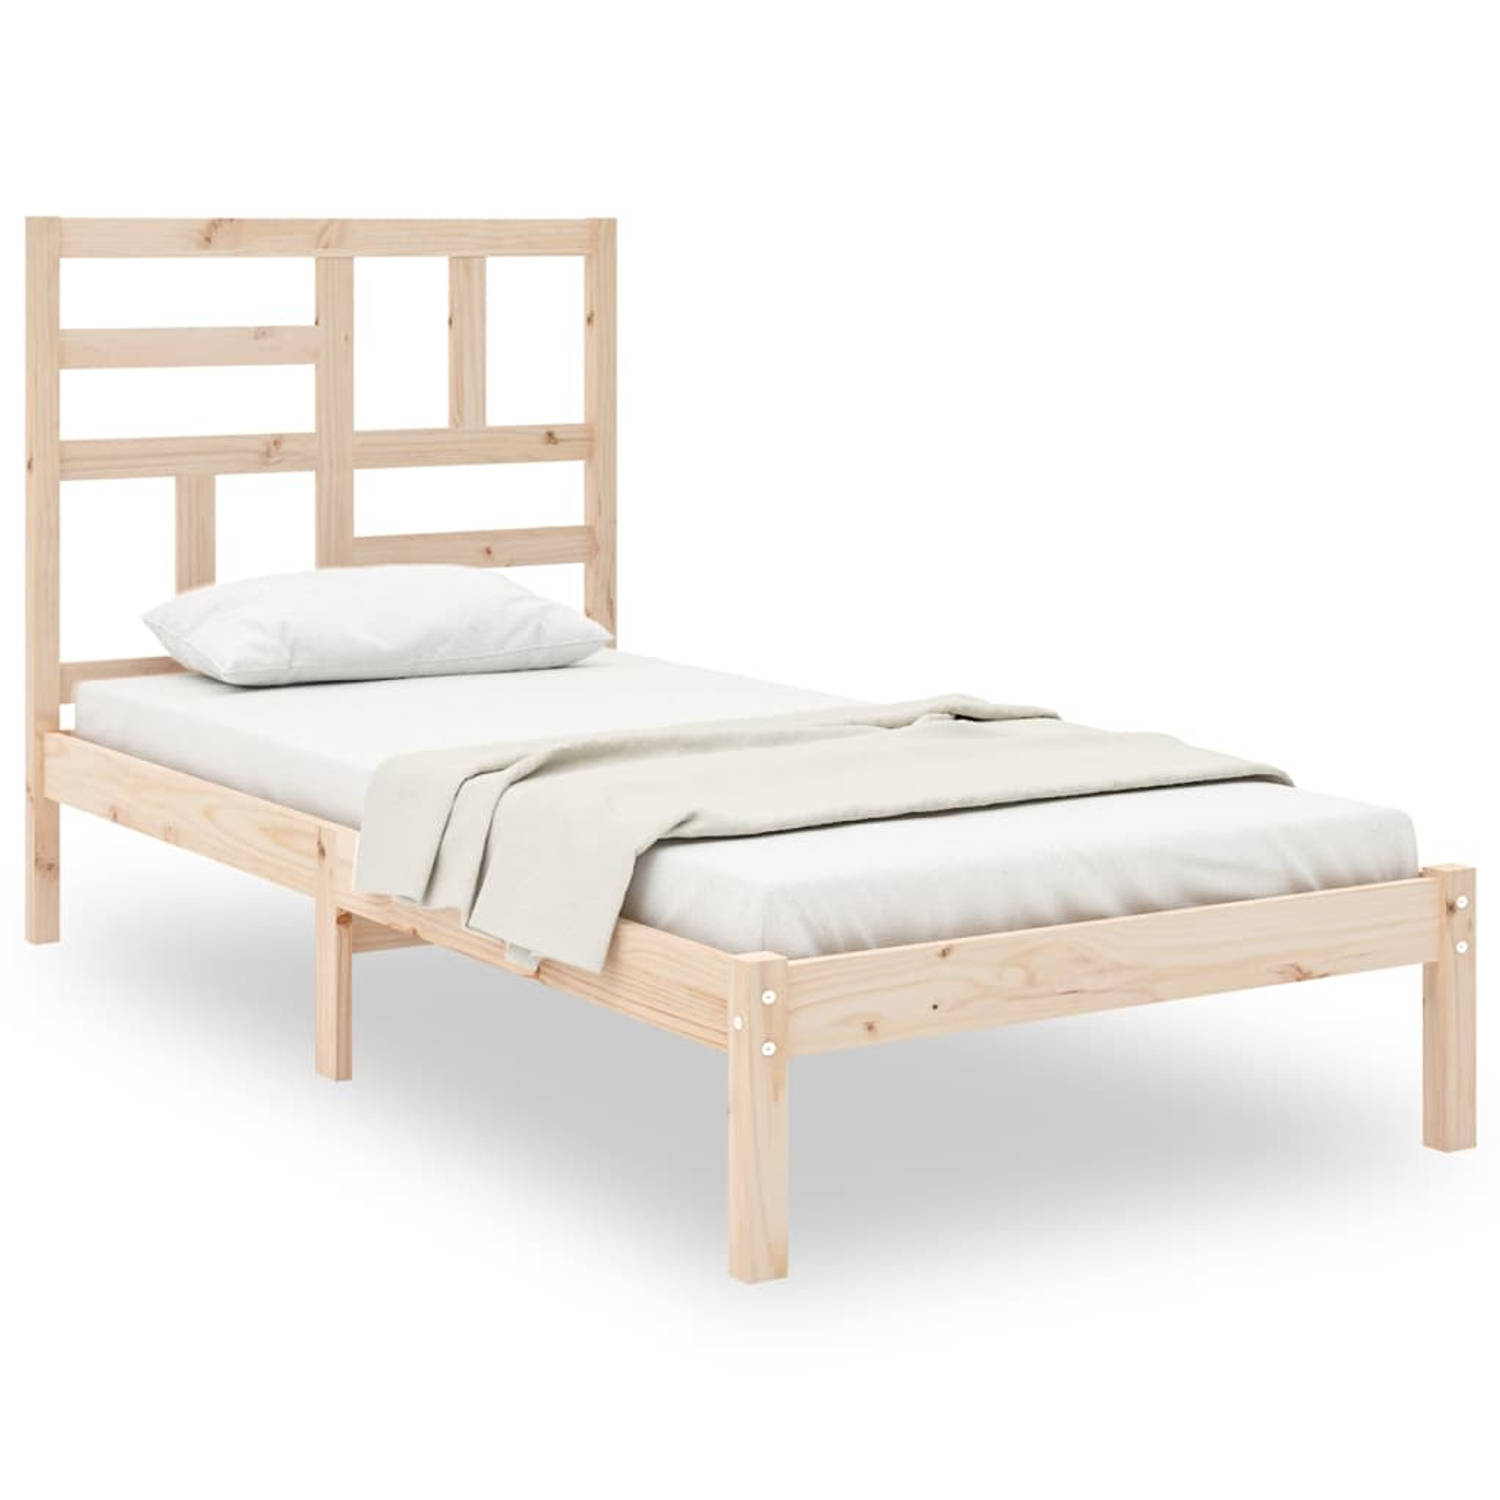 The Living Store Bedframe massief hout 90x200 cm - Bedframe - Bedframes - Bed - Bedbodem - Ledikant - Bed Frame - Massief Houten Bedframe - Slaapmeubel - Eenpersoonsbed - Bedden -